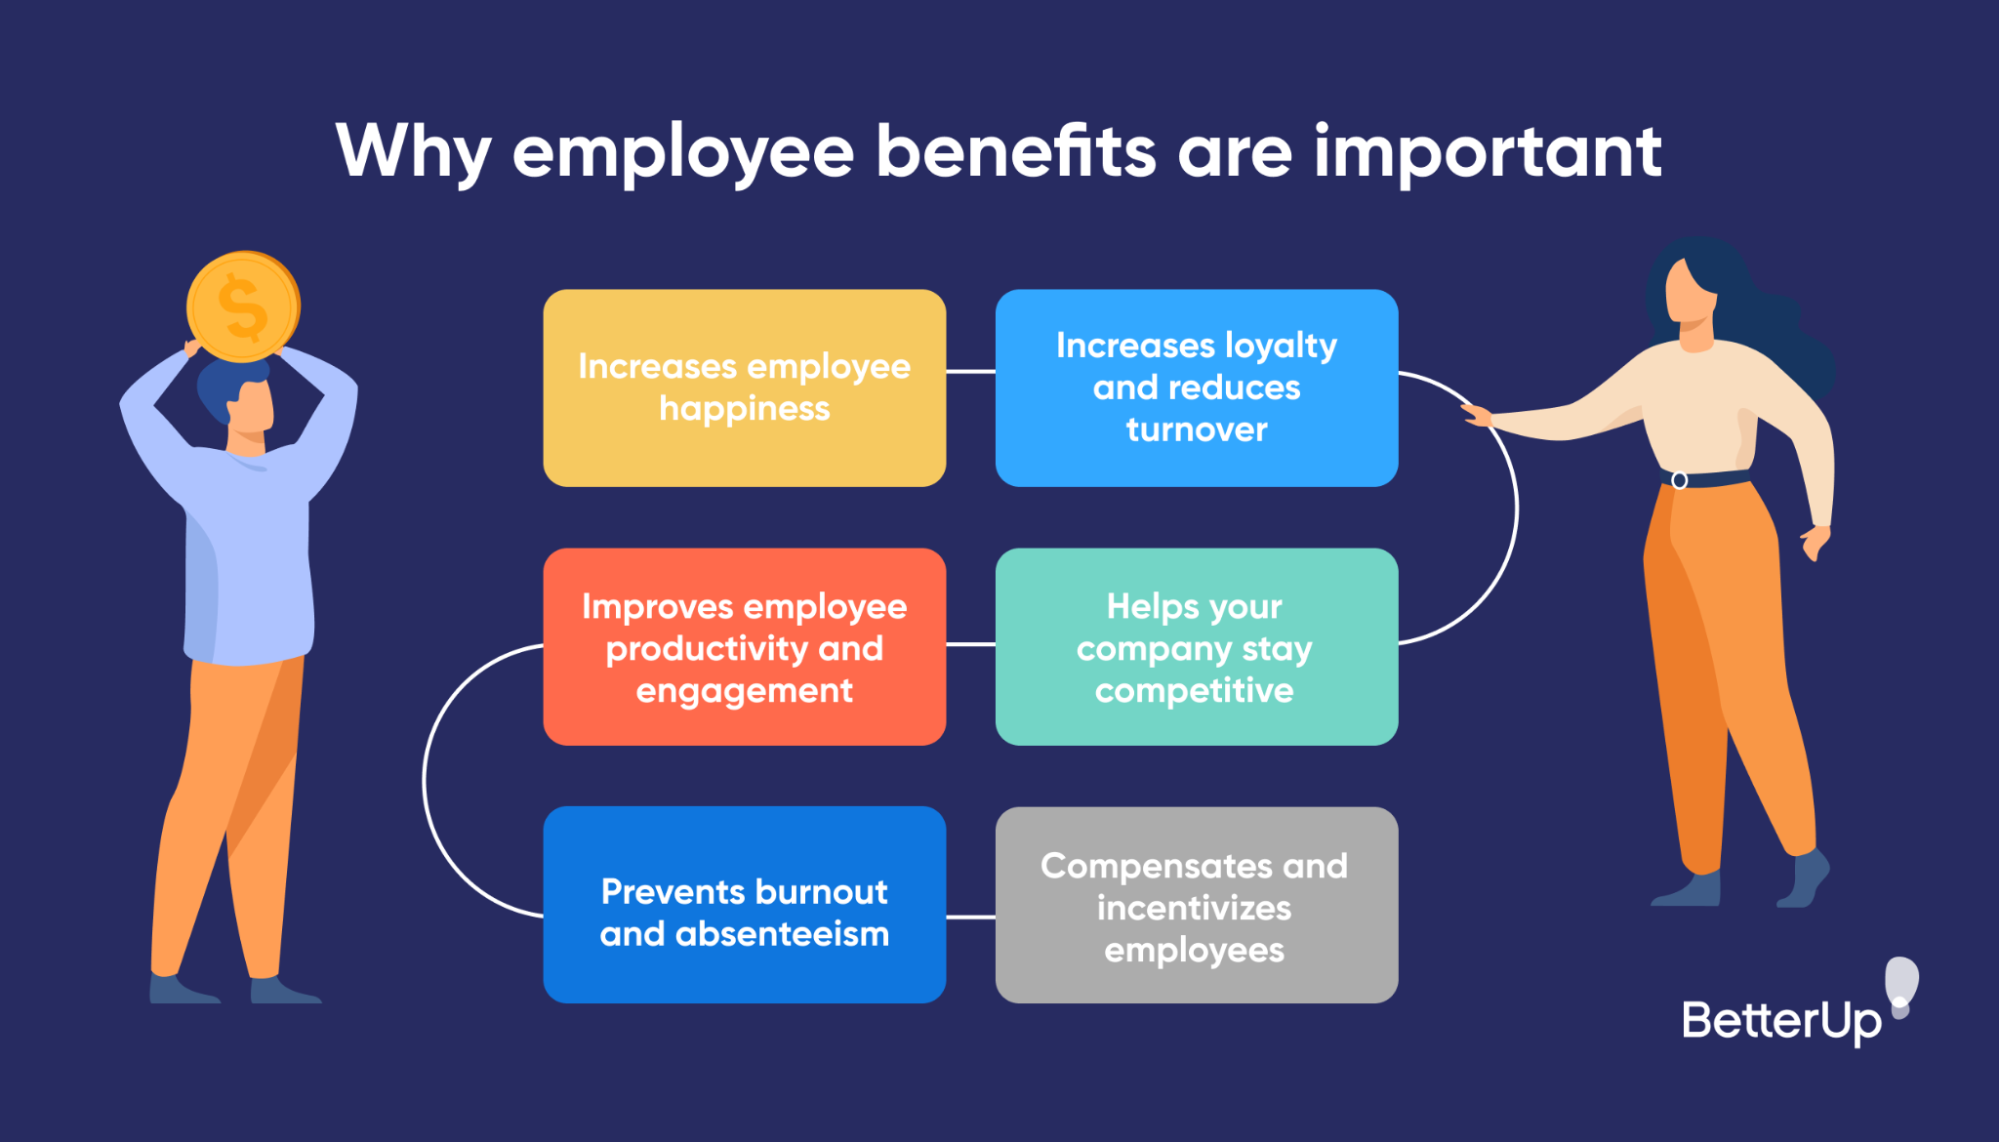 Beneficios para empleados 101: una guía incompleta para comenzar